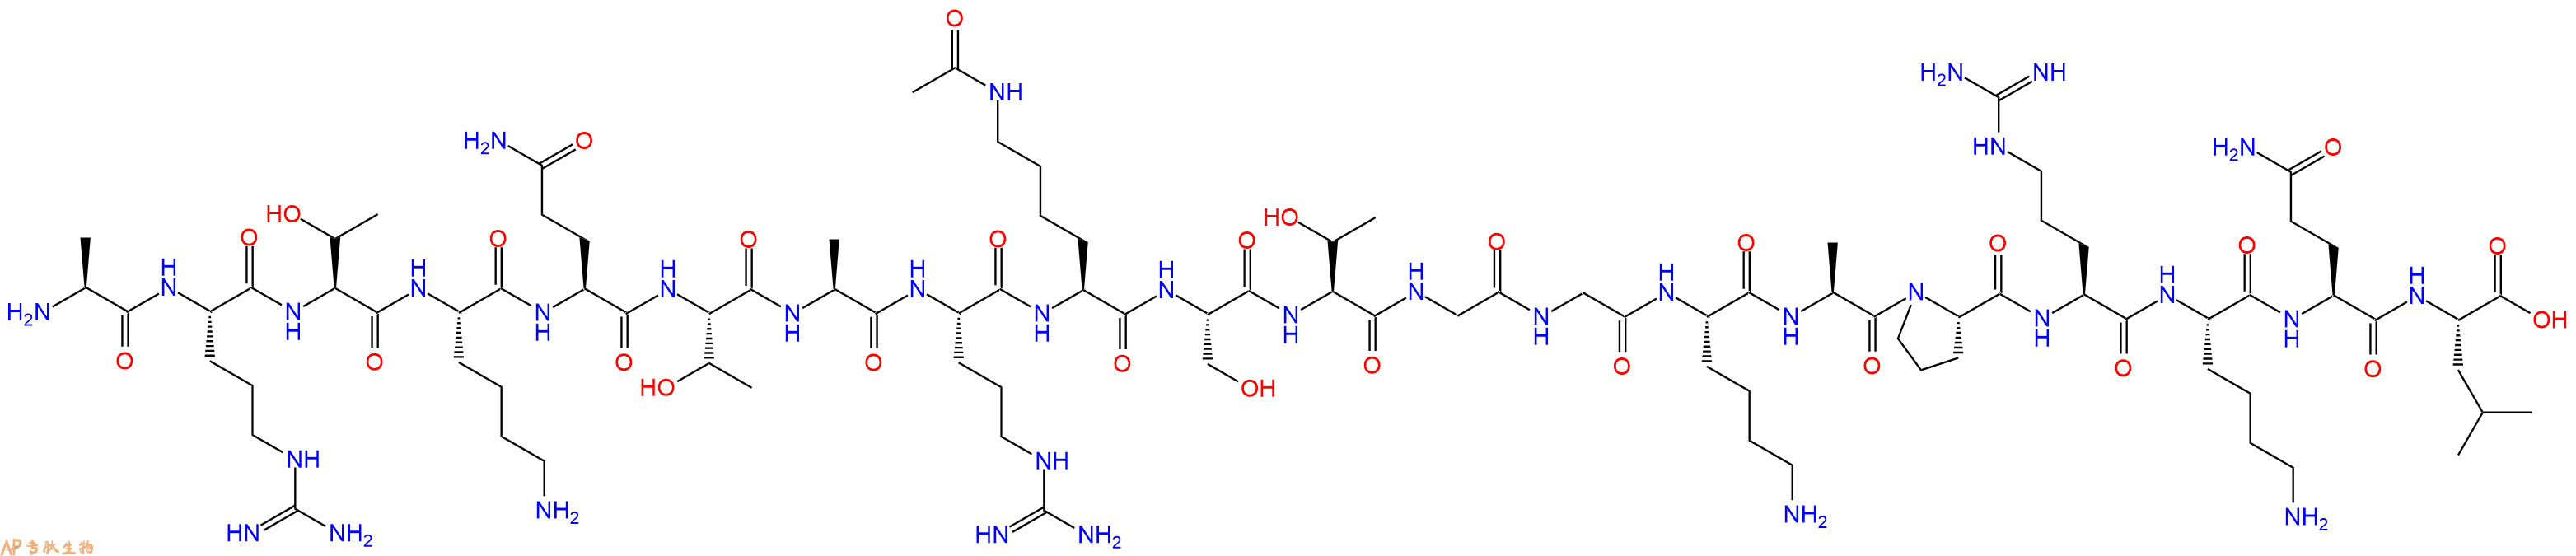 专肽生物产品组蛋白肽段[Lys(Ac)9]-Histone H3(1-20), H3K9(Ac)